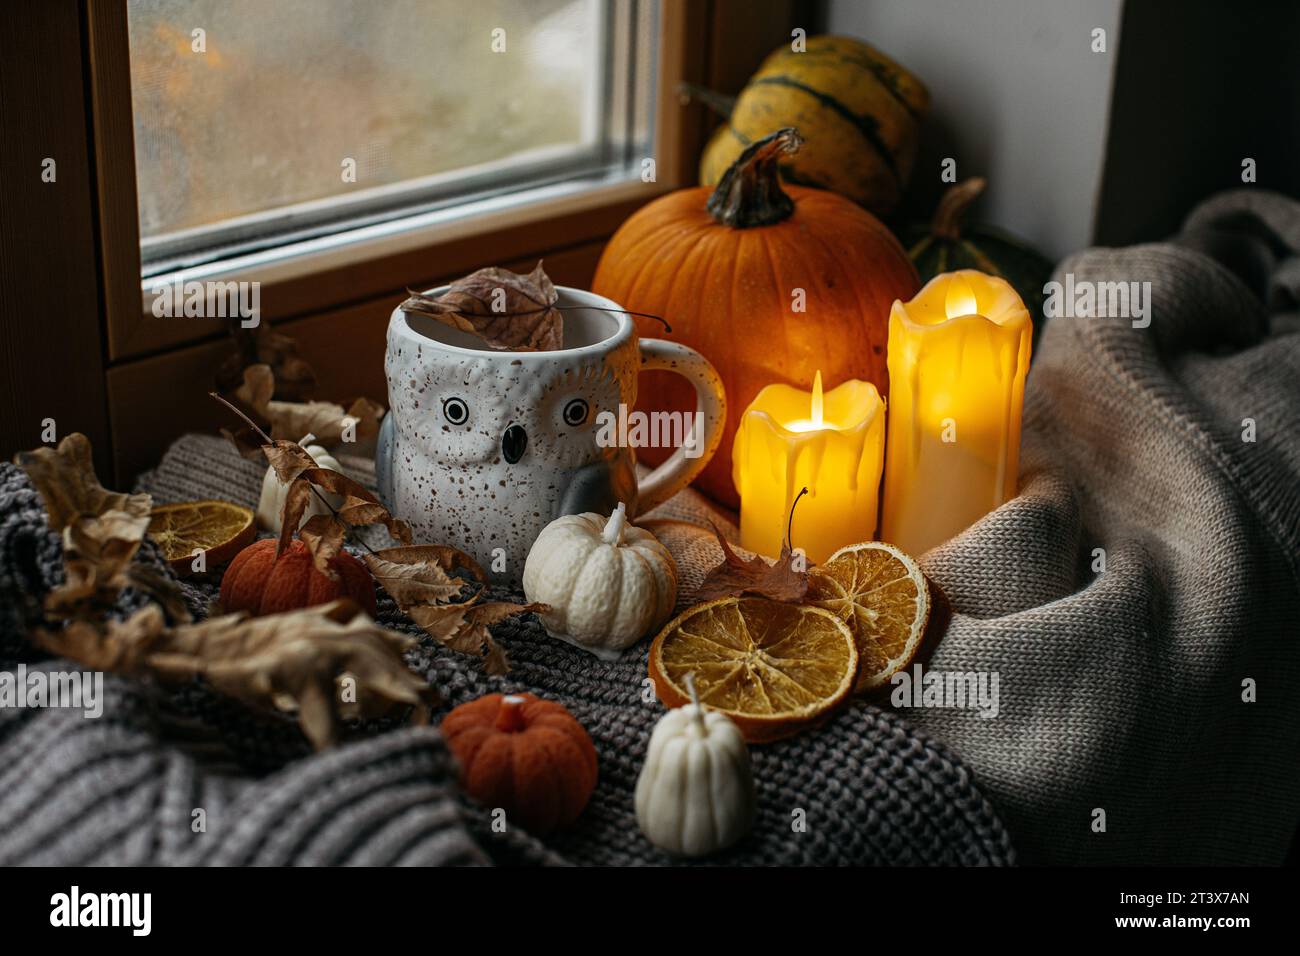 Décoration Halloween avec tasse hibou, citrouilles et bougies Banque D'Images